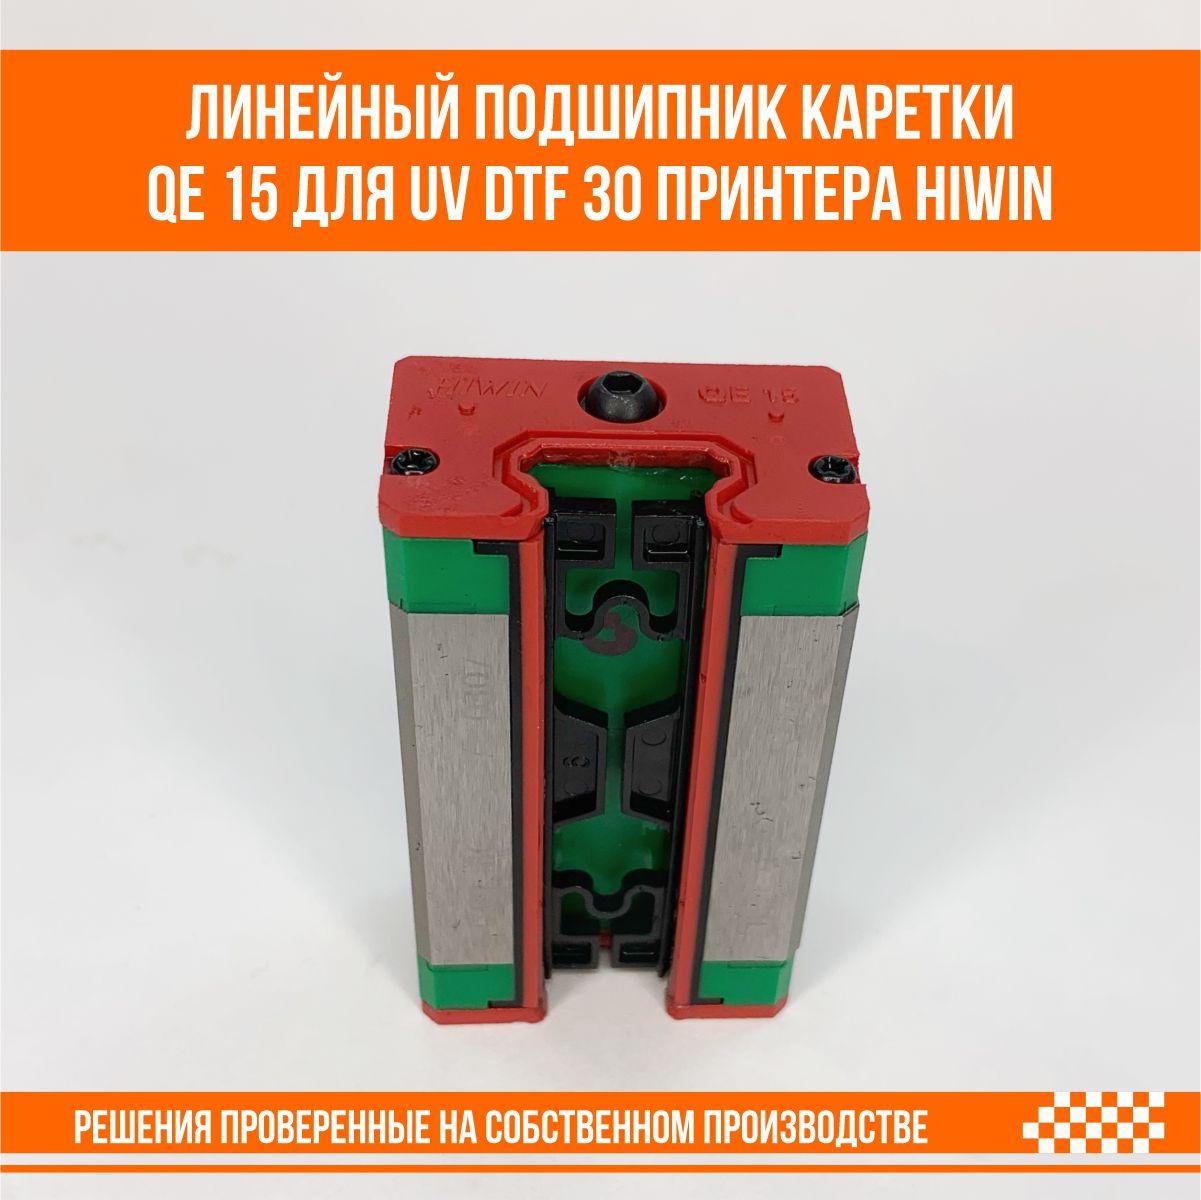 Подшипник каретки линейный UV DTF 30 принтера QEH 15 от производителя Hiwin, Слайдер D002T105, фото 1